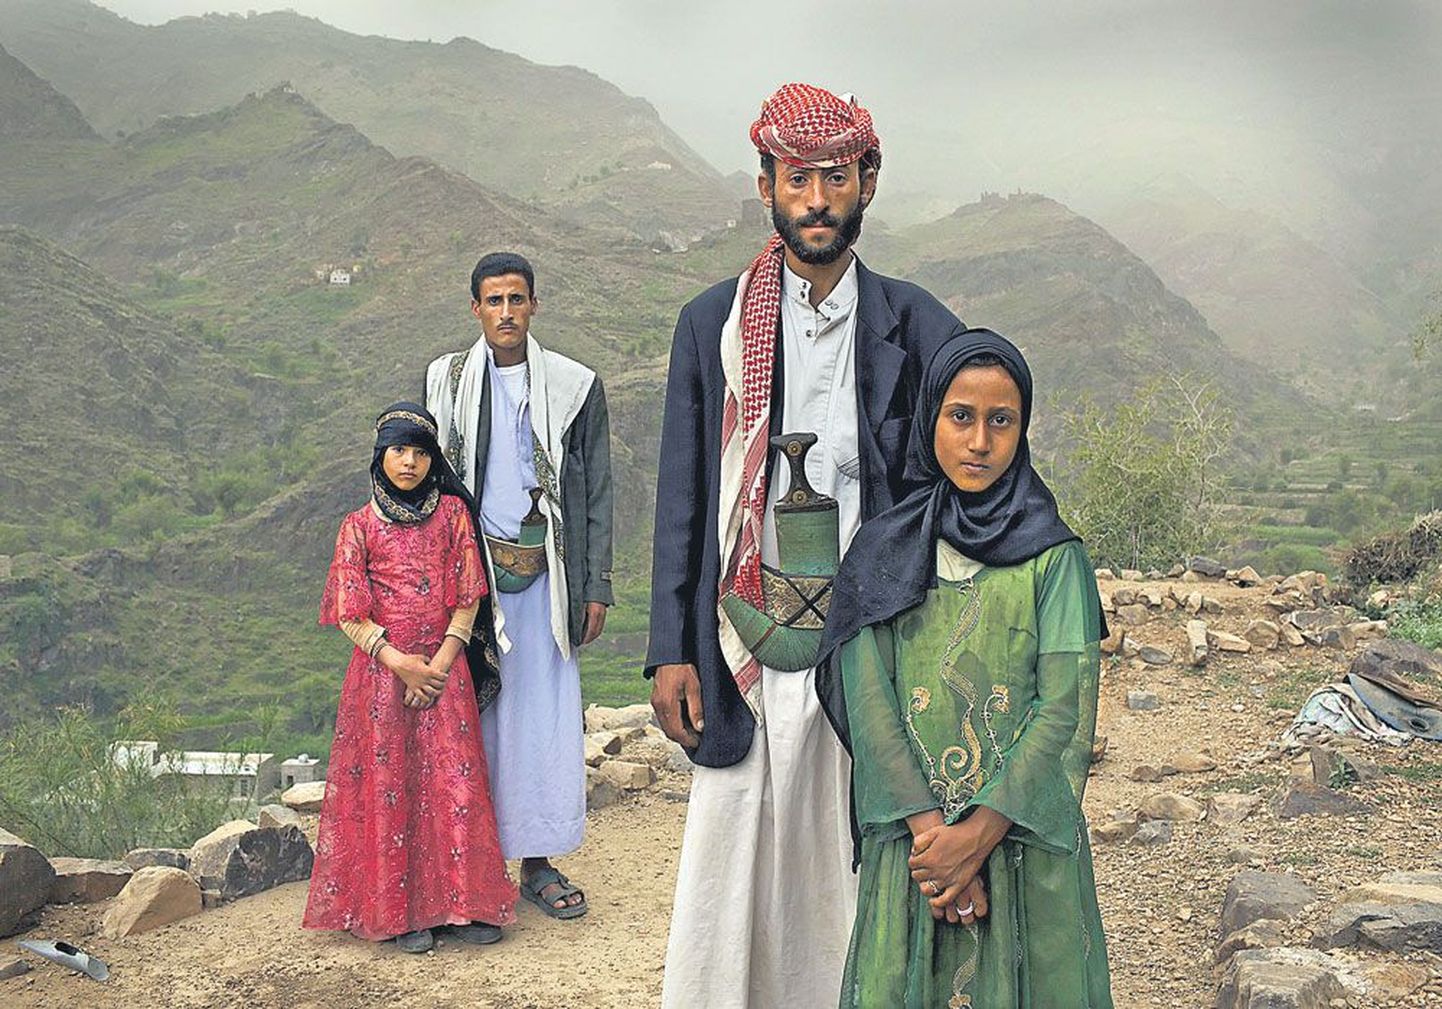 Снимок Стефани Синклер, посвященный йеменским «молодоженам», в 2011 году был удостоен премии международного фотоконкурса. Тахани (слева) и Маед поженились, когда девочке было шесть лет, а ее супругу 25. Рядом – бывшая одноклассница Тахани Гхада со своим супругом.